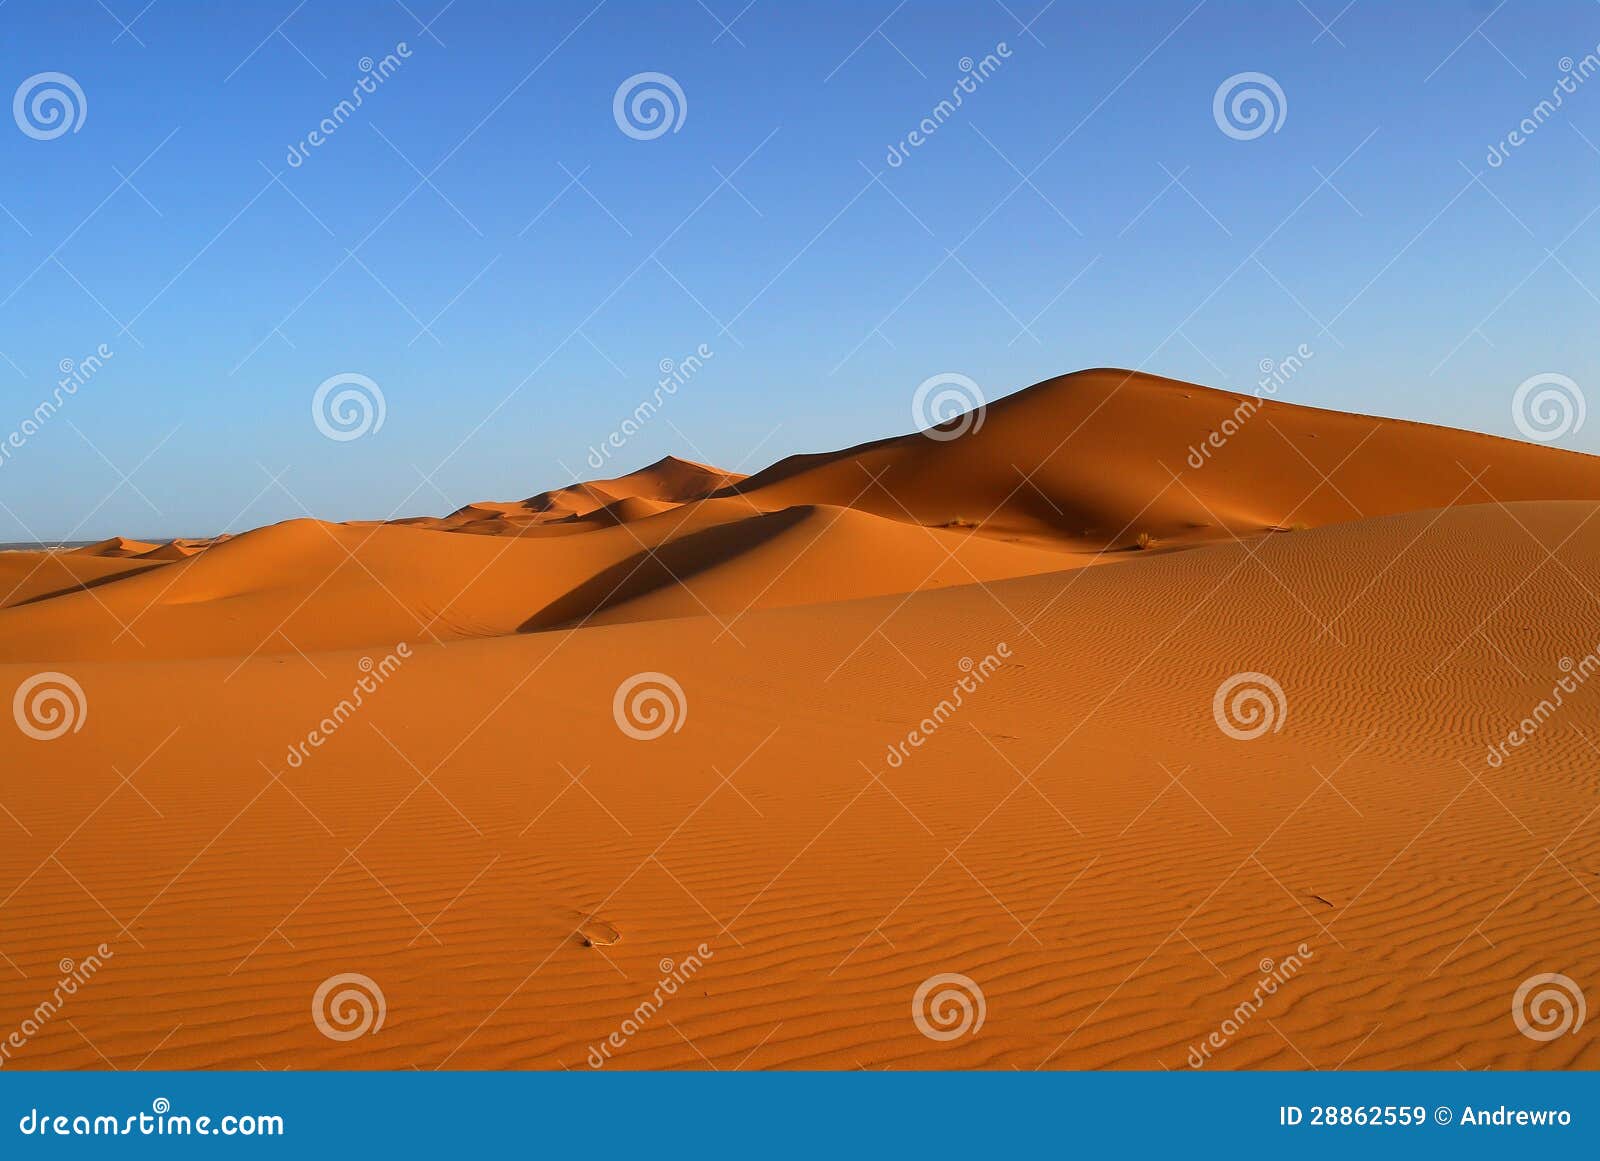 dunes of sahara desert